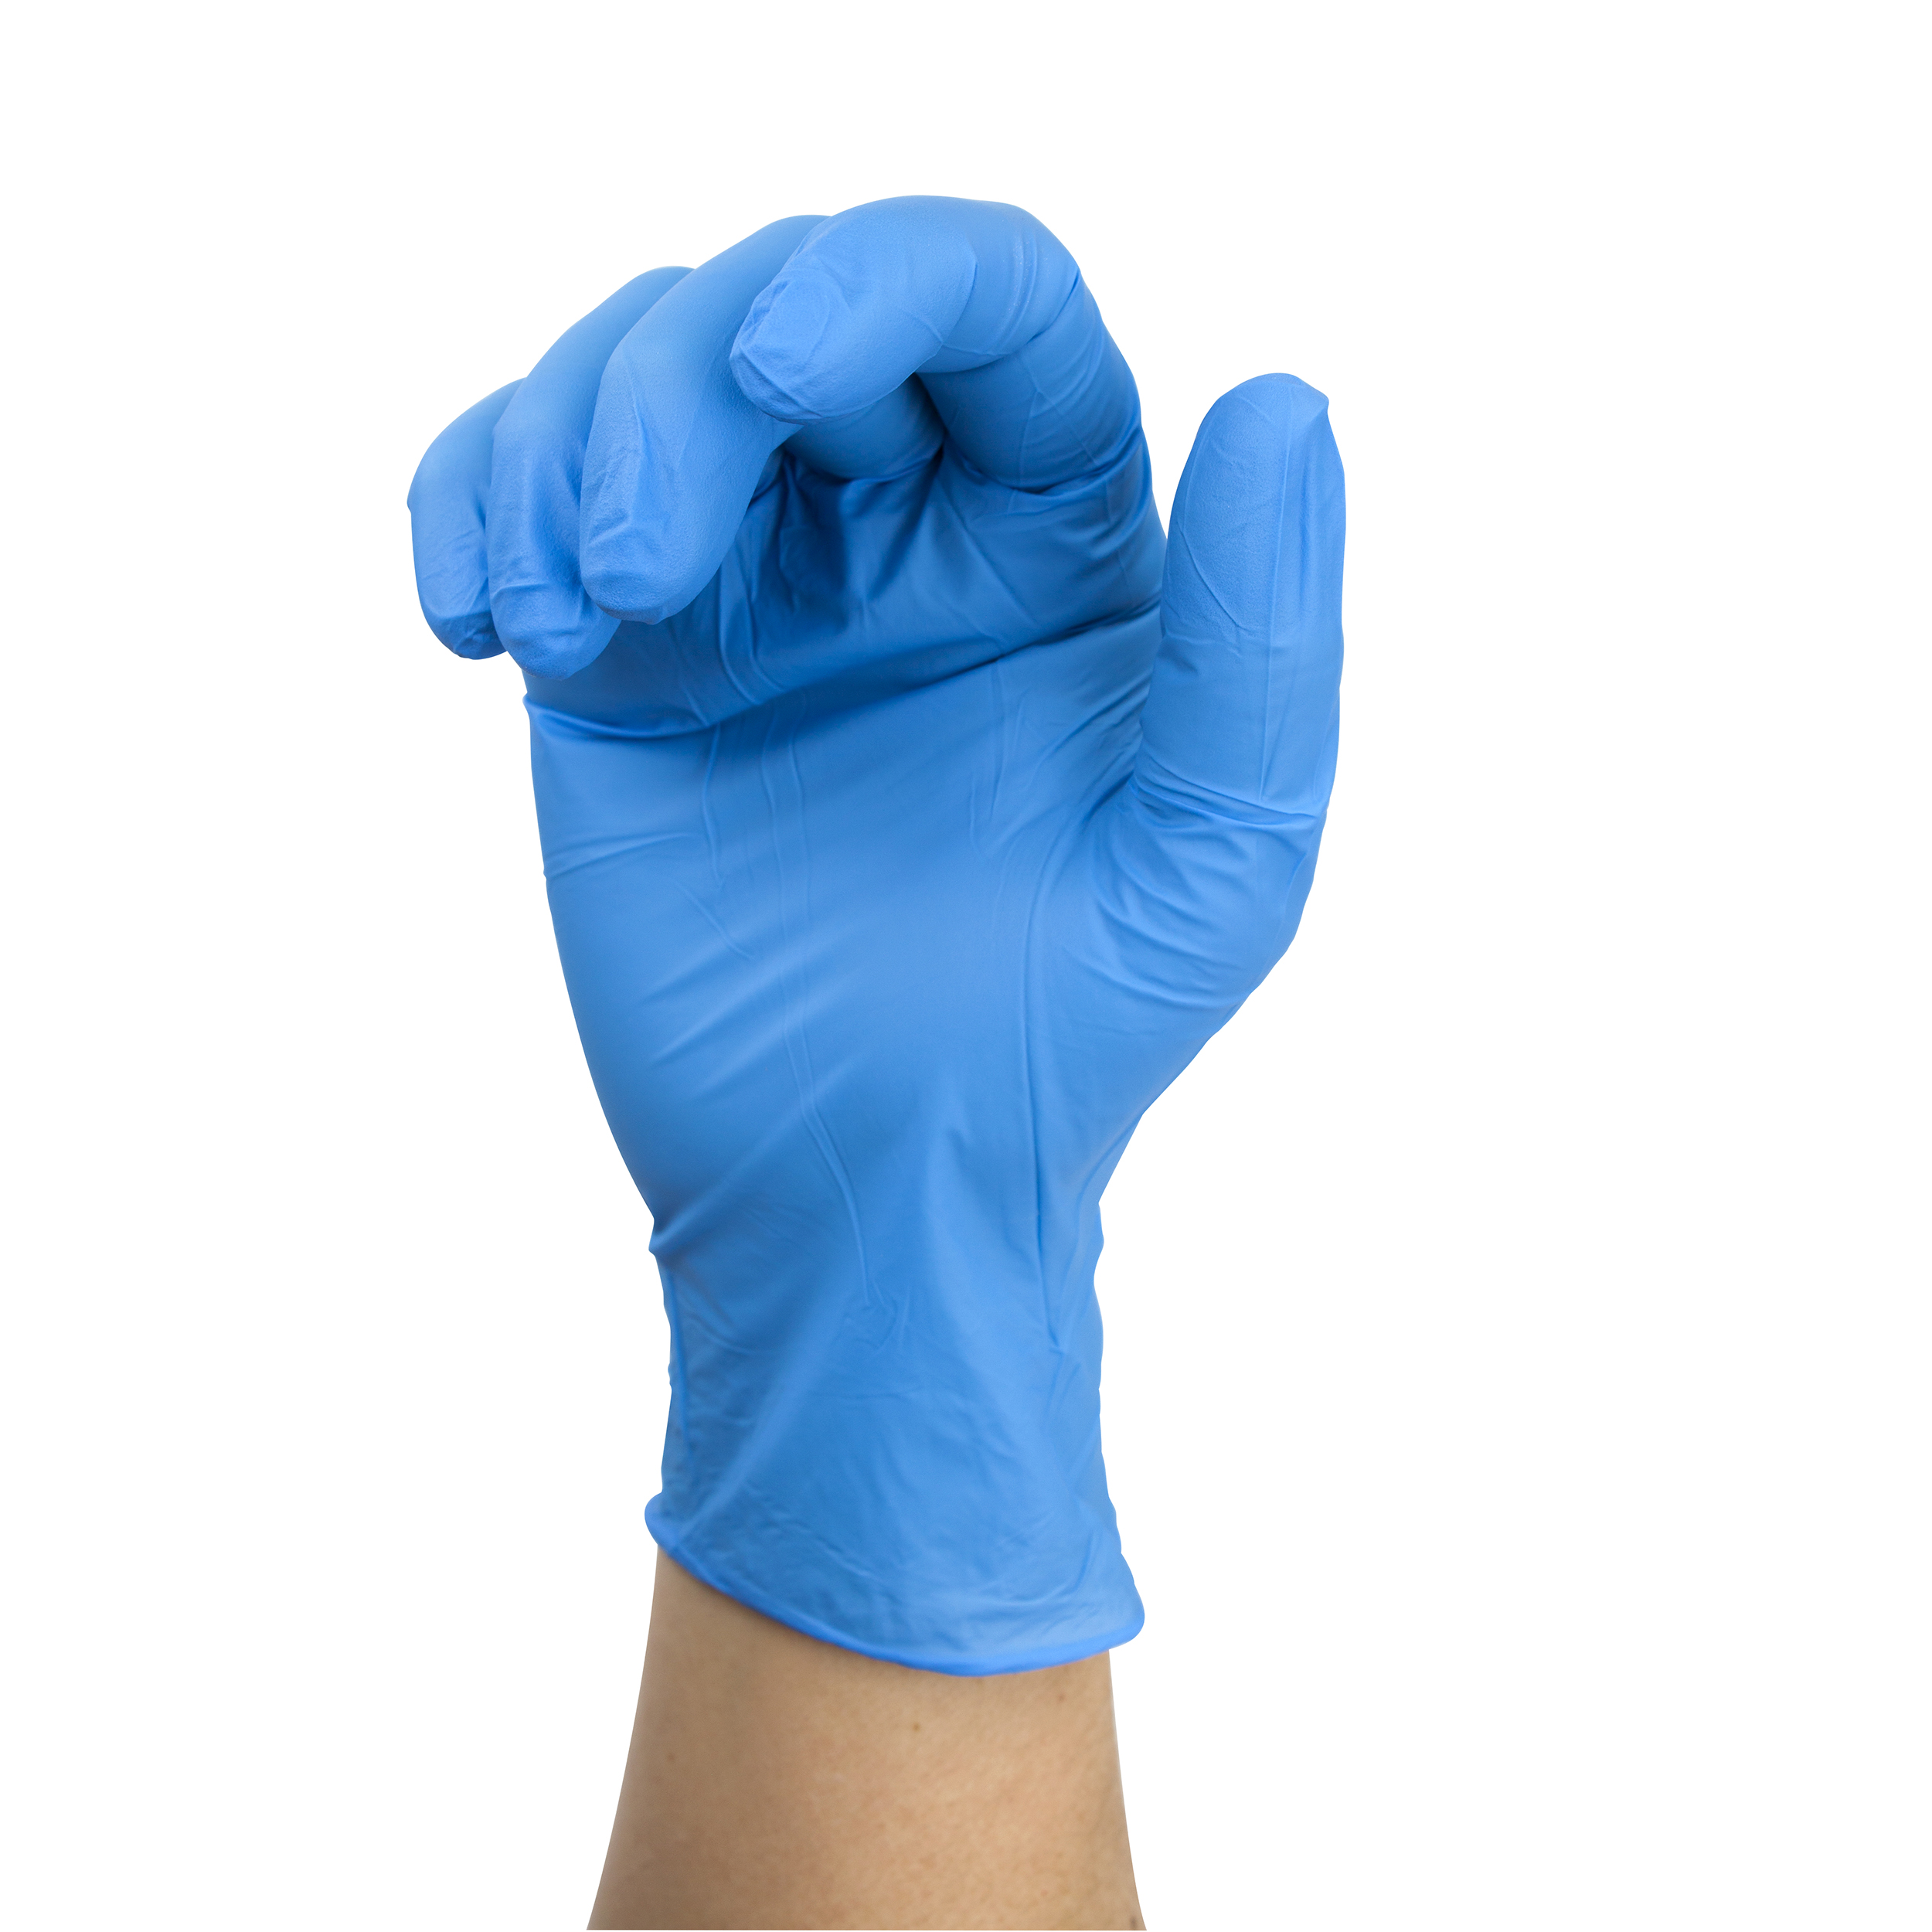 Nitrile Exam Glove (Non-latex) Powder Free - Xl - Blue - 1000 Pairs